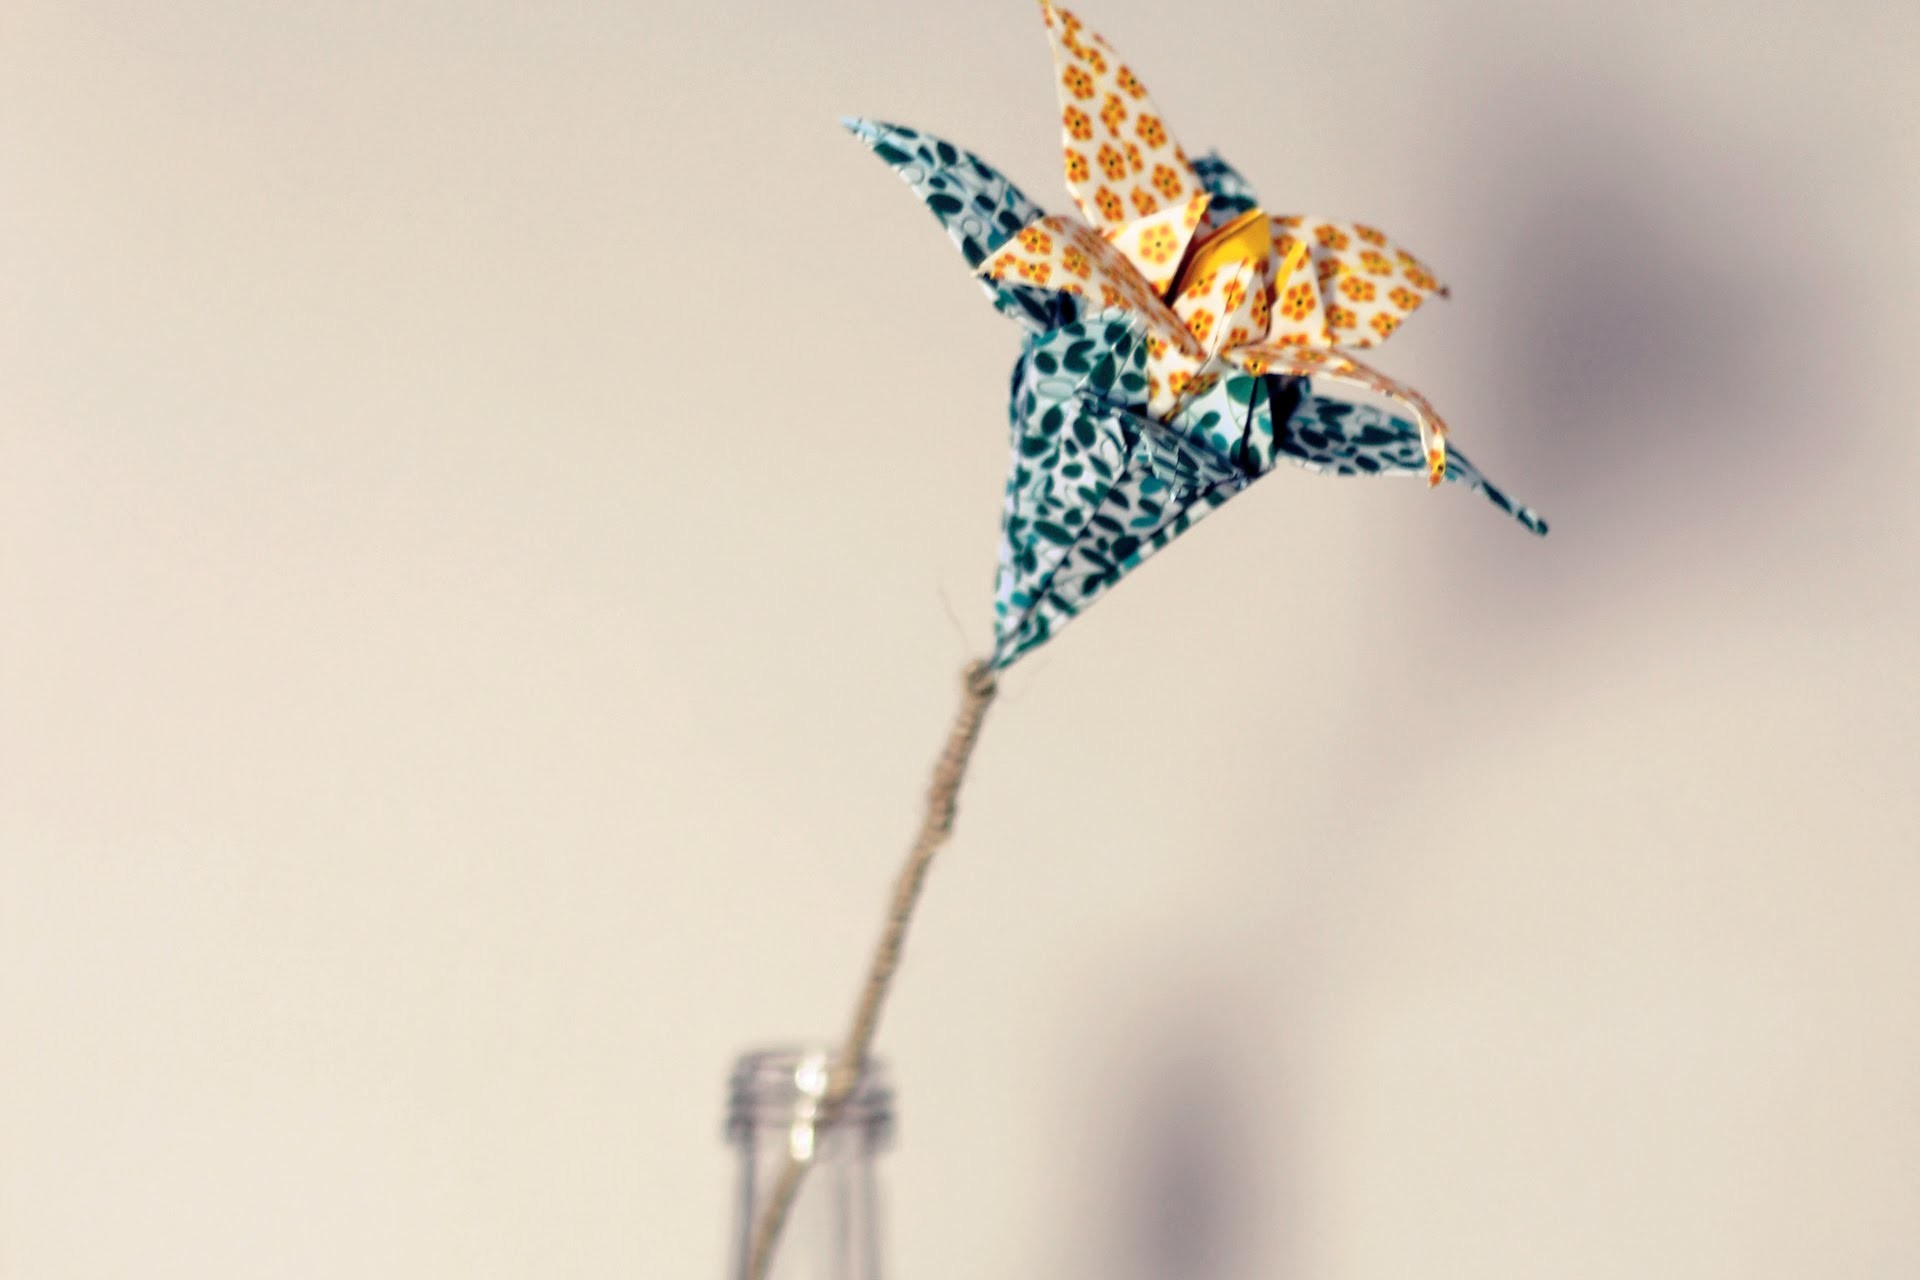 DIY ORIGAMI: How to make a paper flower - Cómo hacer una flor de papel